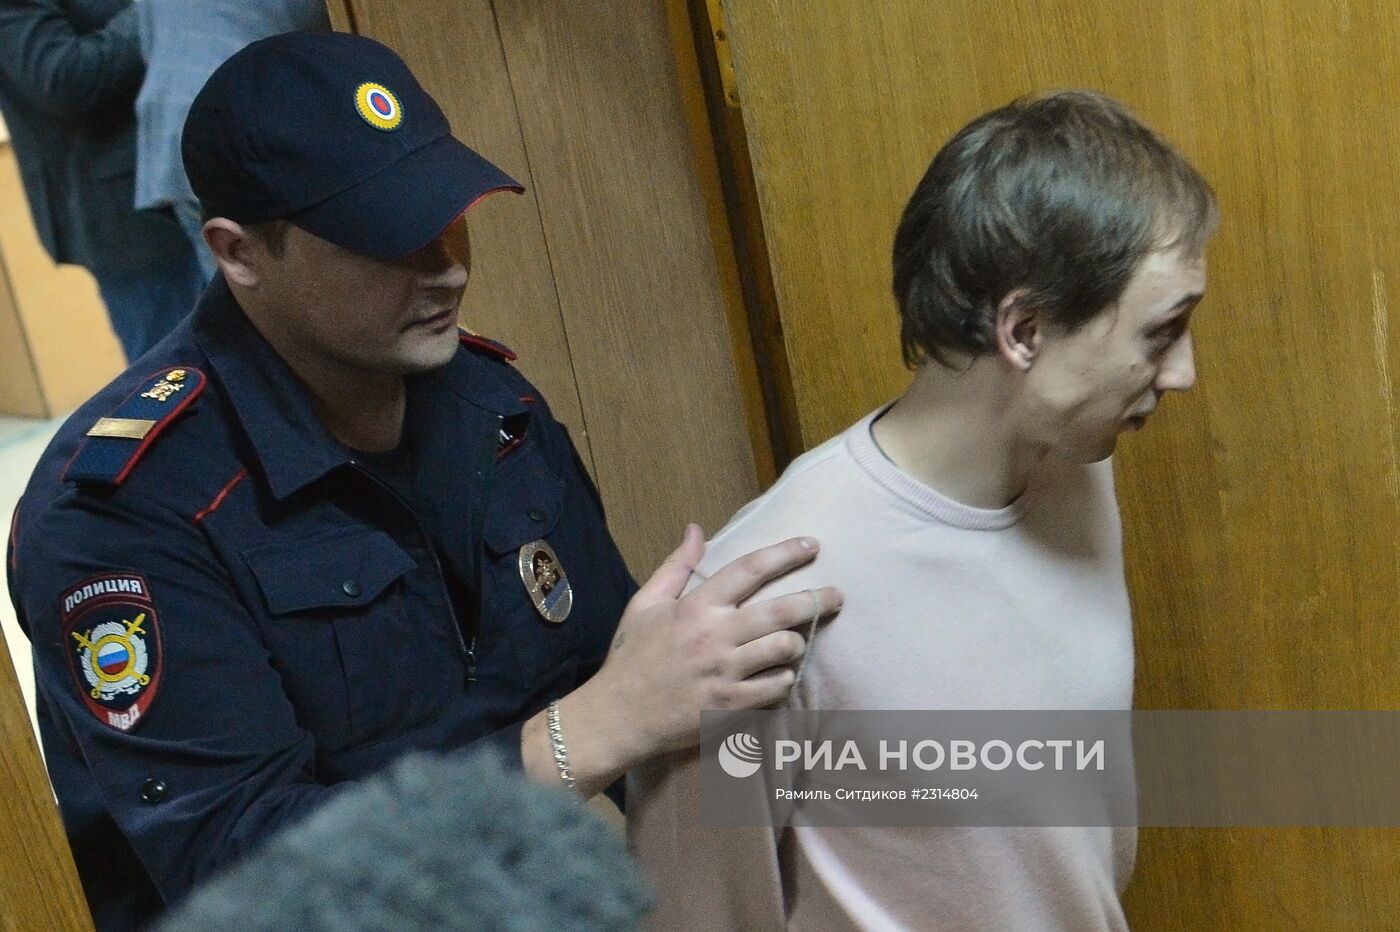 Сергей Филин вызван в суд на допрос по делу о нападении на него